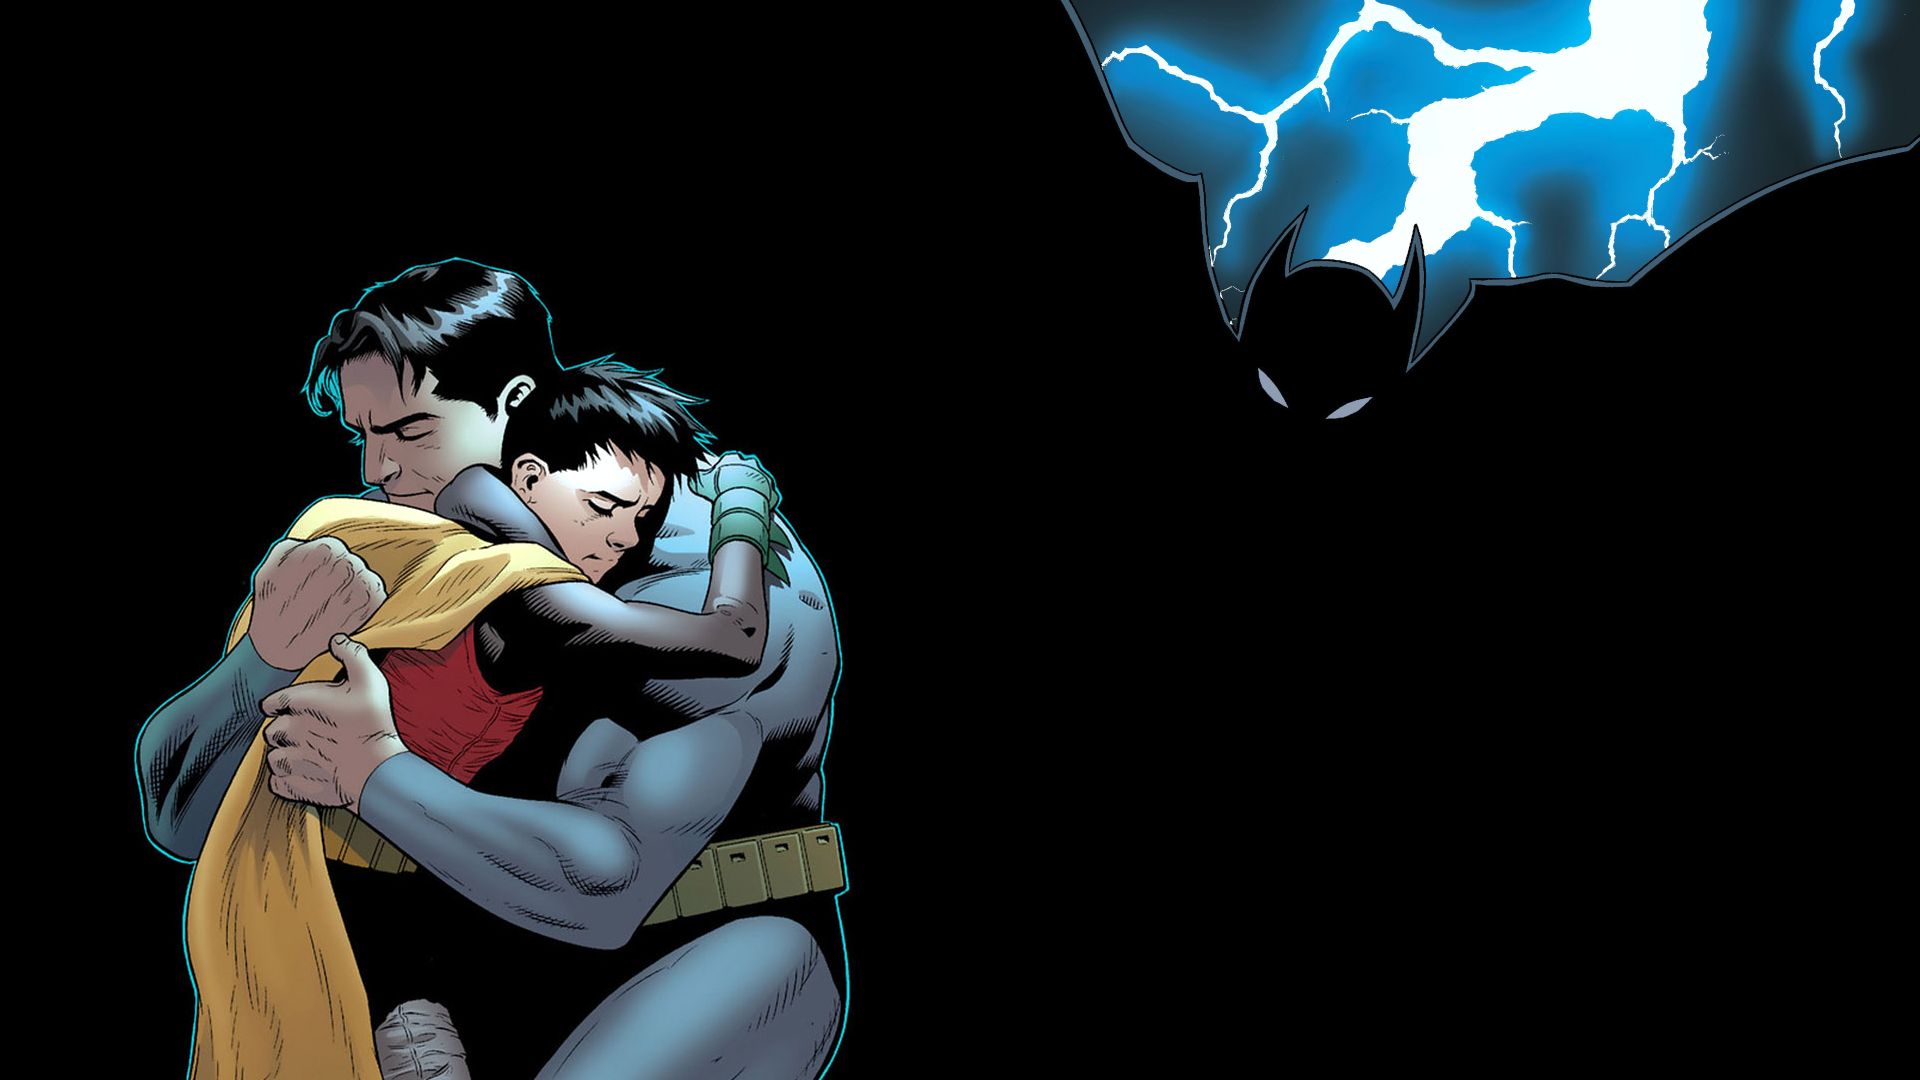 Скачать обои бесплатно Комиксы, Бэтмен, Робин (Комиксы Dc) картинка на рабочий стол ПК